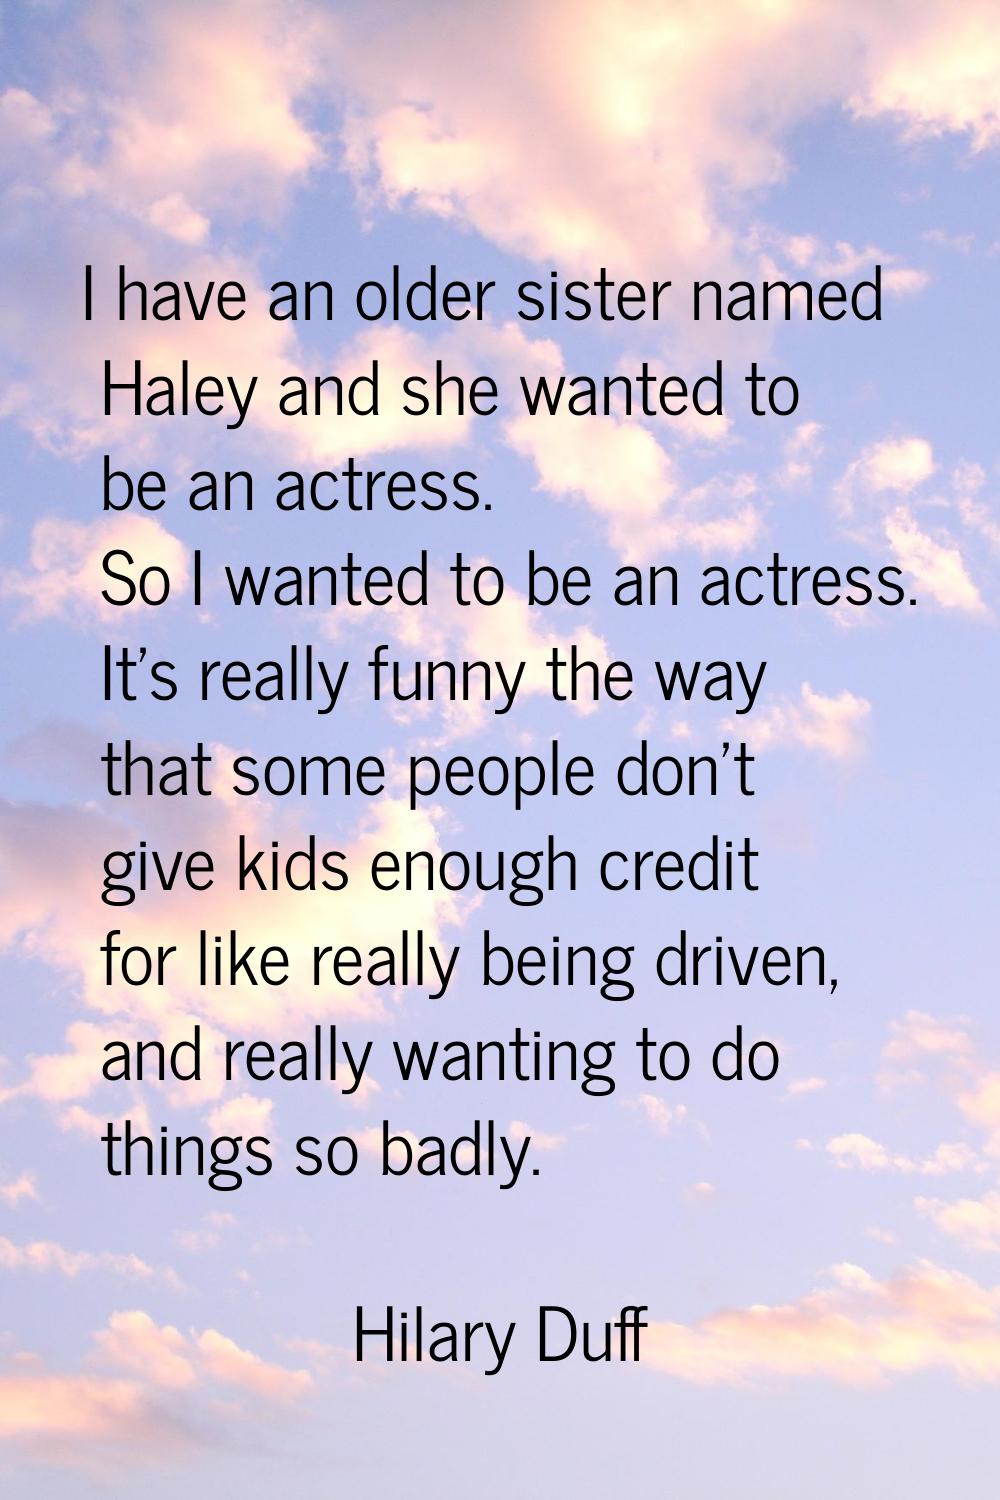 I have an older sister named Haley and she wanted to be an actress. So I wanted to be an actress. I